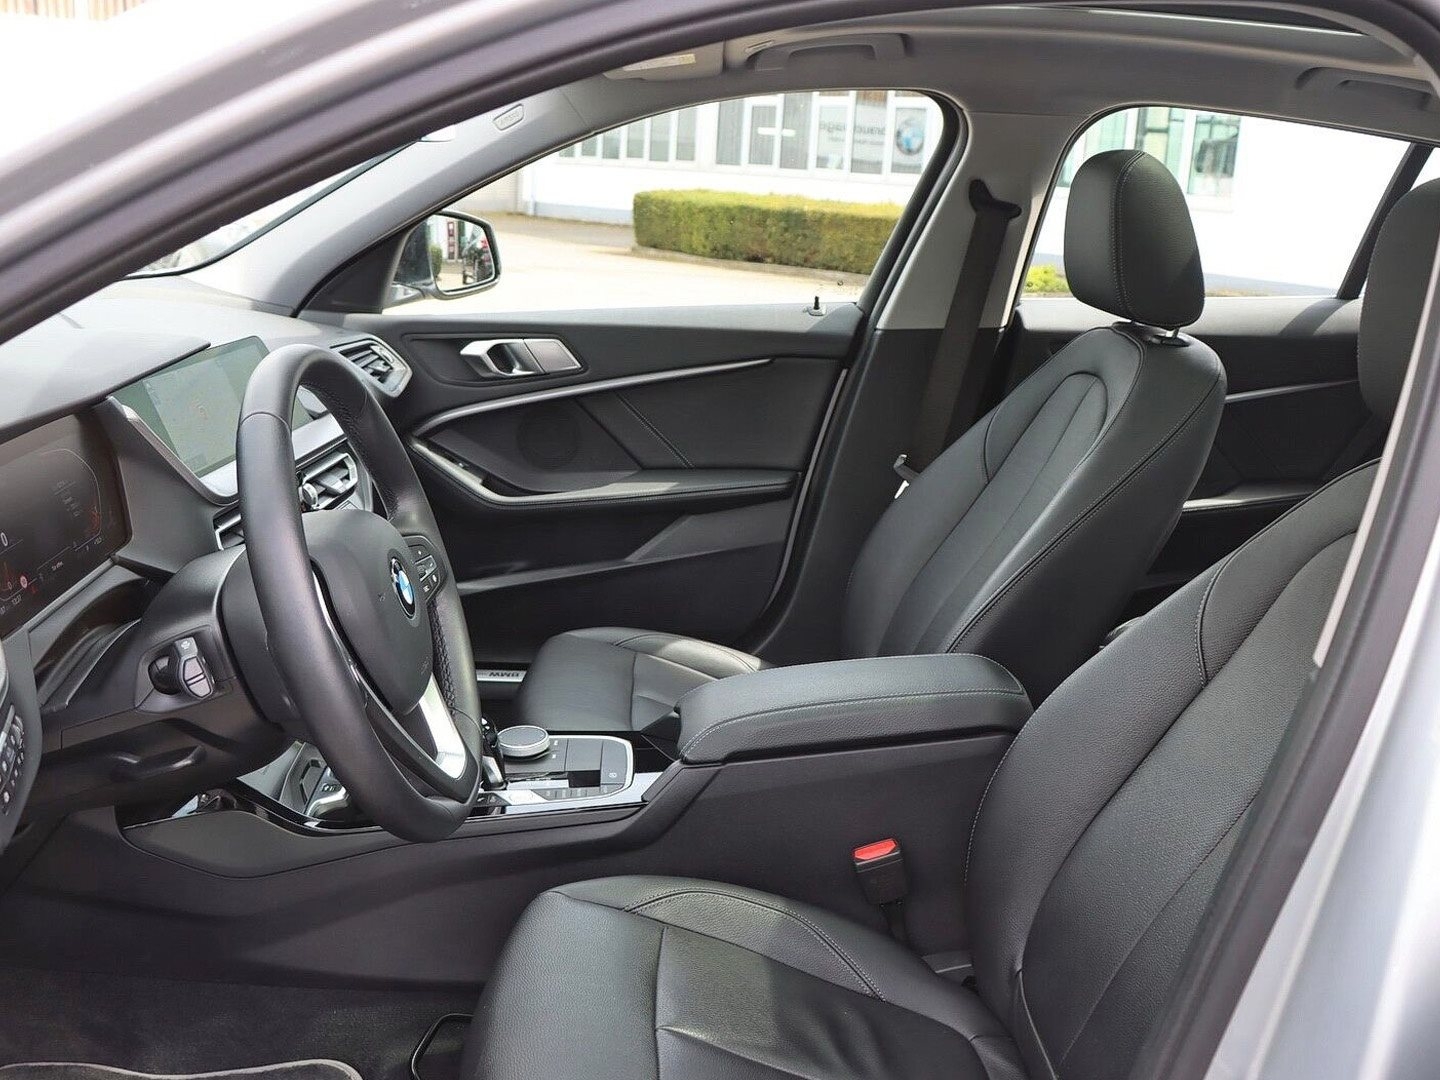 BMW 120d xDrive Luxury Line